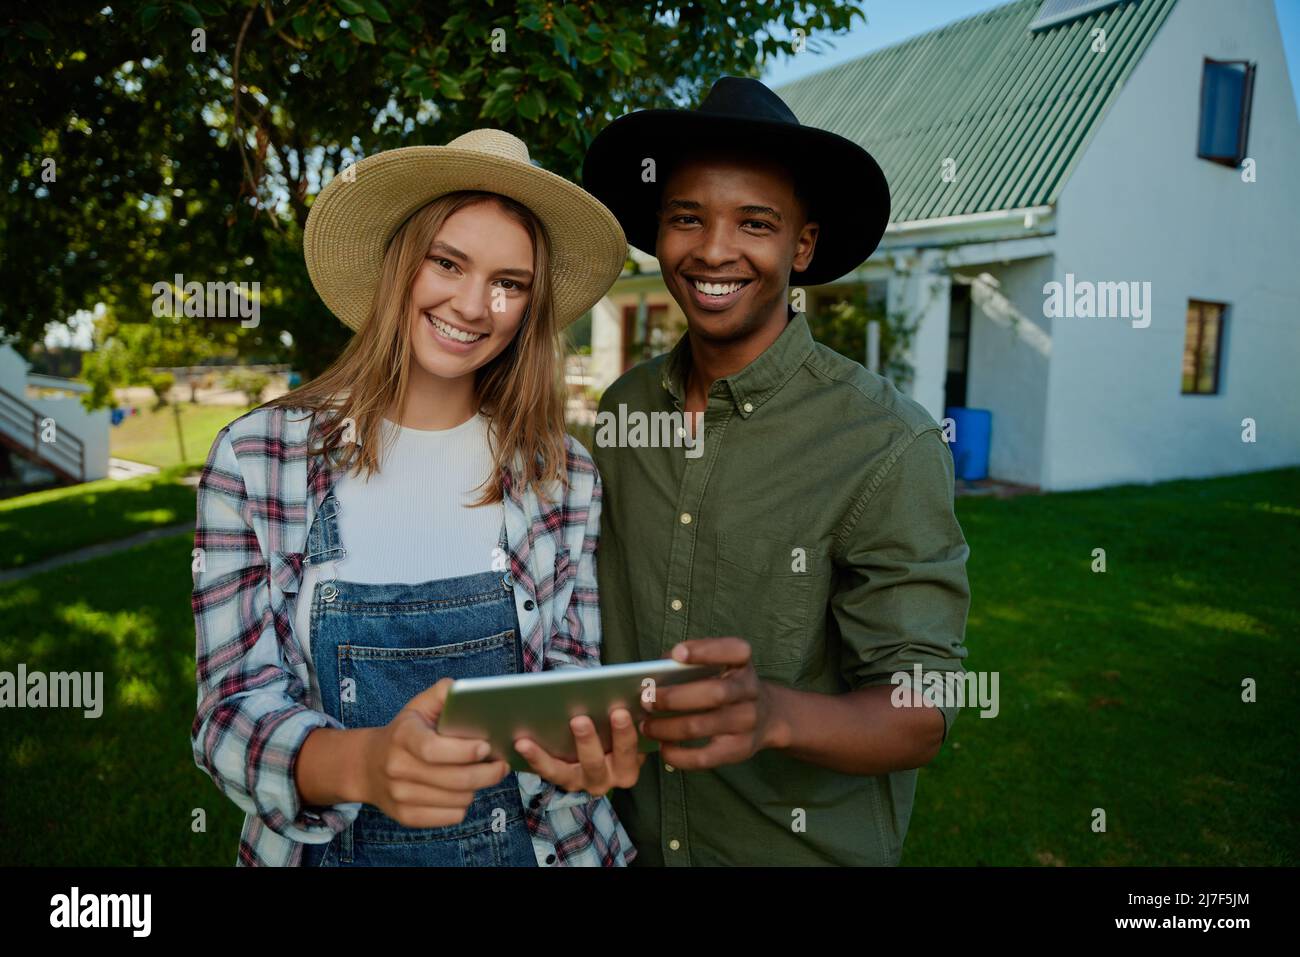 Bauern mit gemischter Rasse stehen im Freien und lächeln, während sie ein digitales Tablet halten Stockfoto